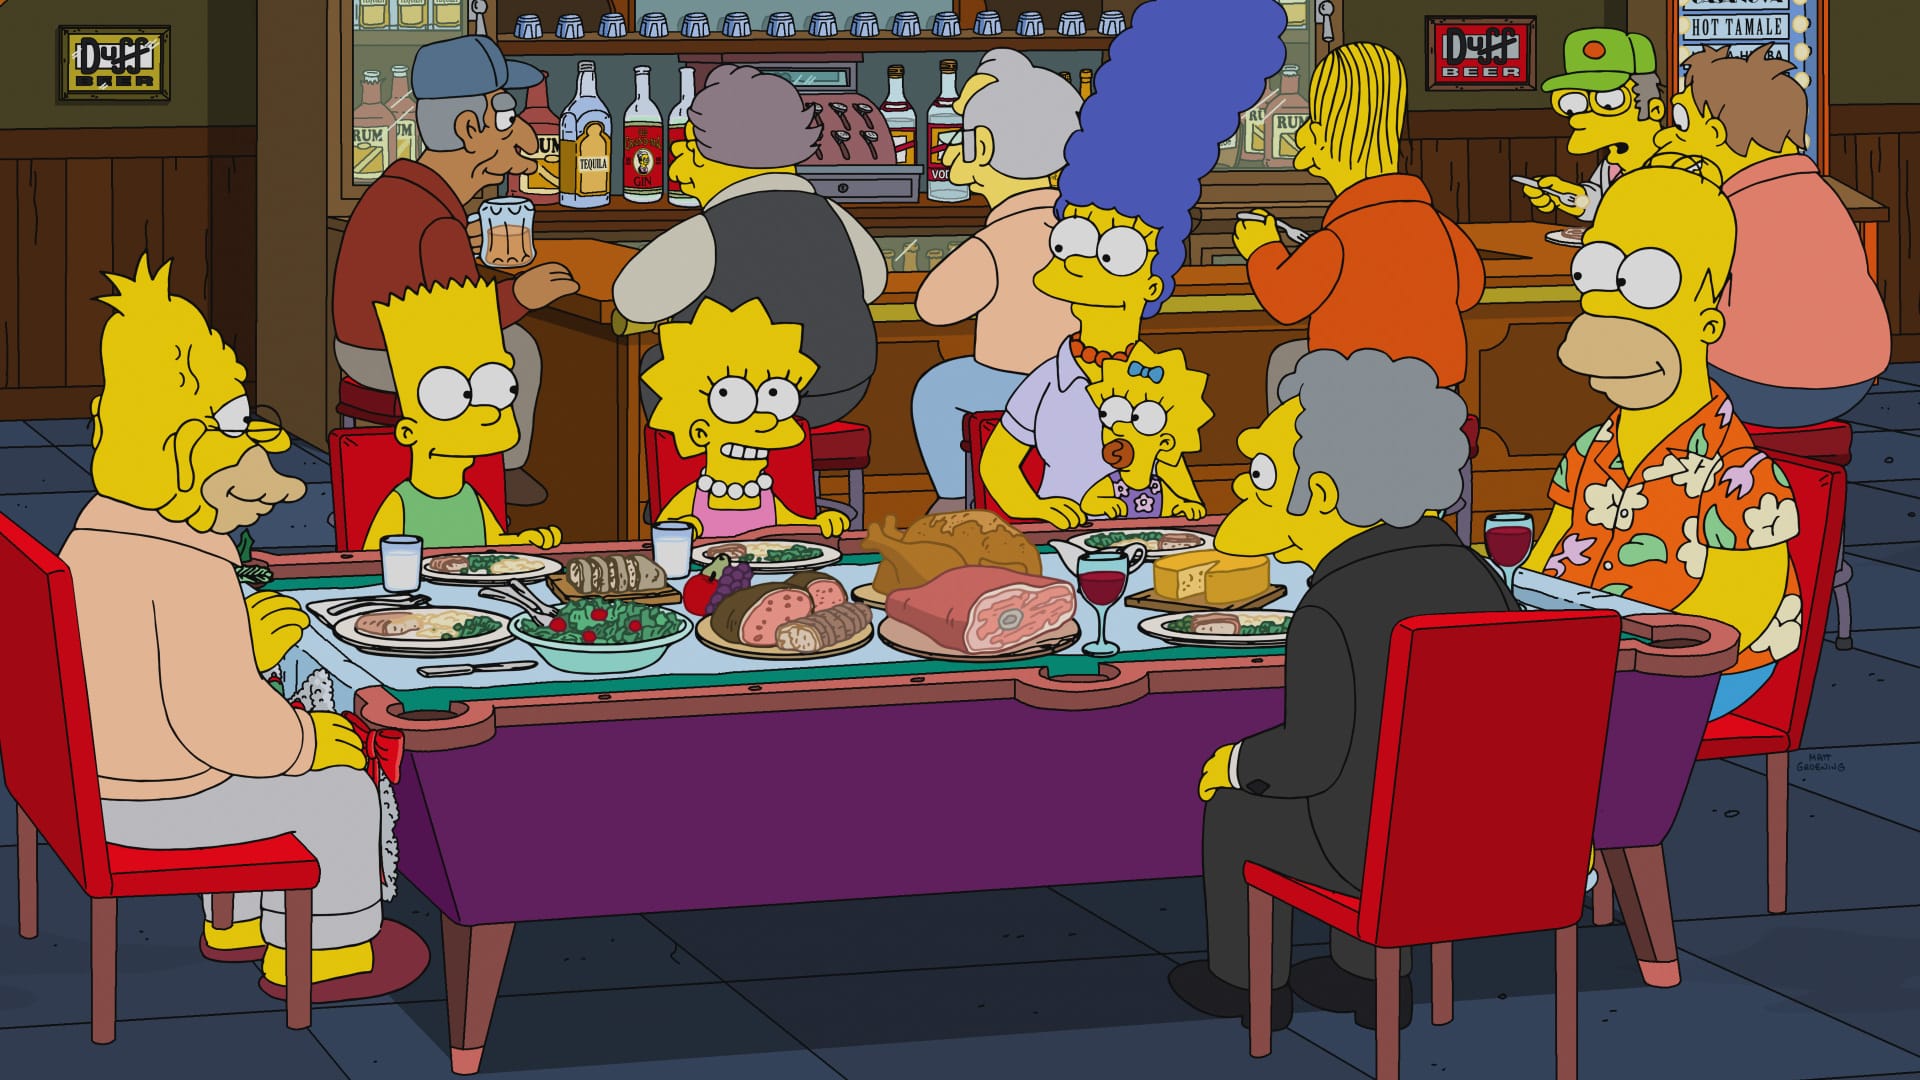 The Simpsons - 'Tis the 30th Season